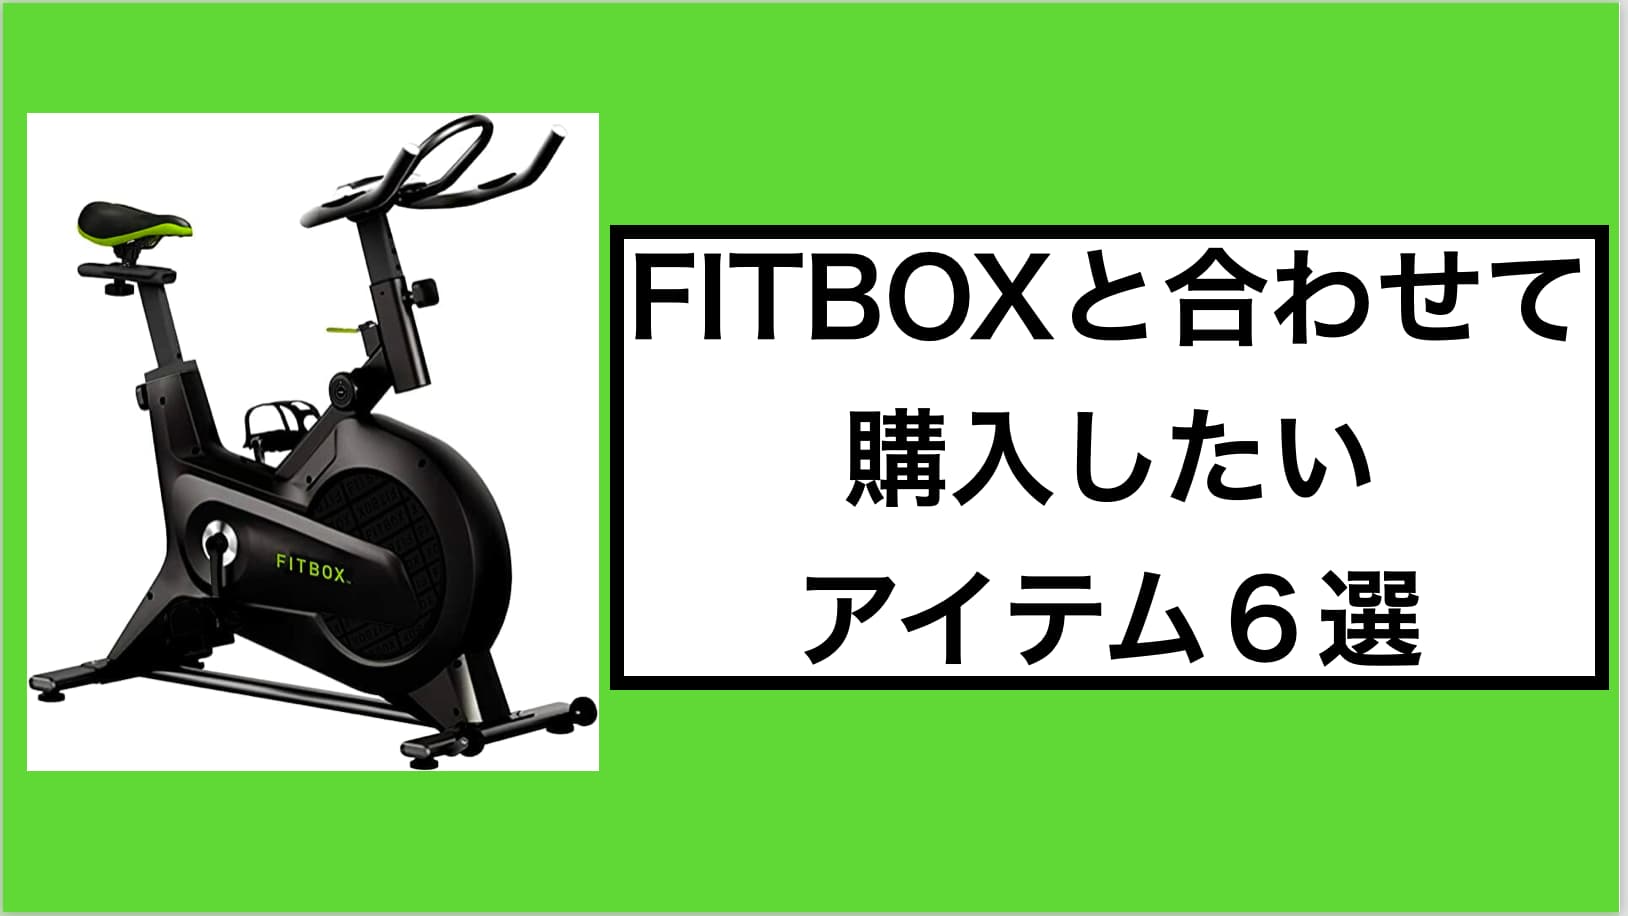 超特価 fitbox lite 公式サドルカバー付き sushitai.com.mx